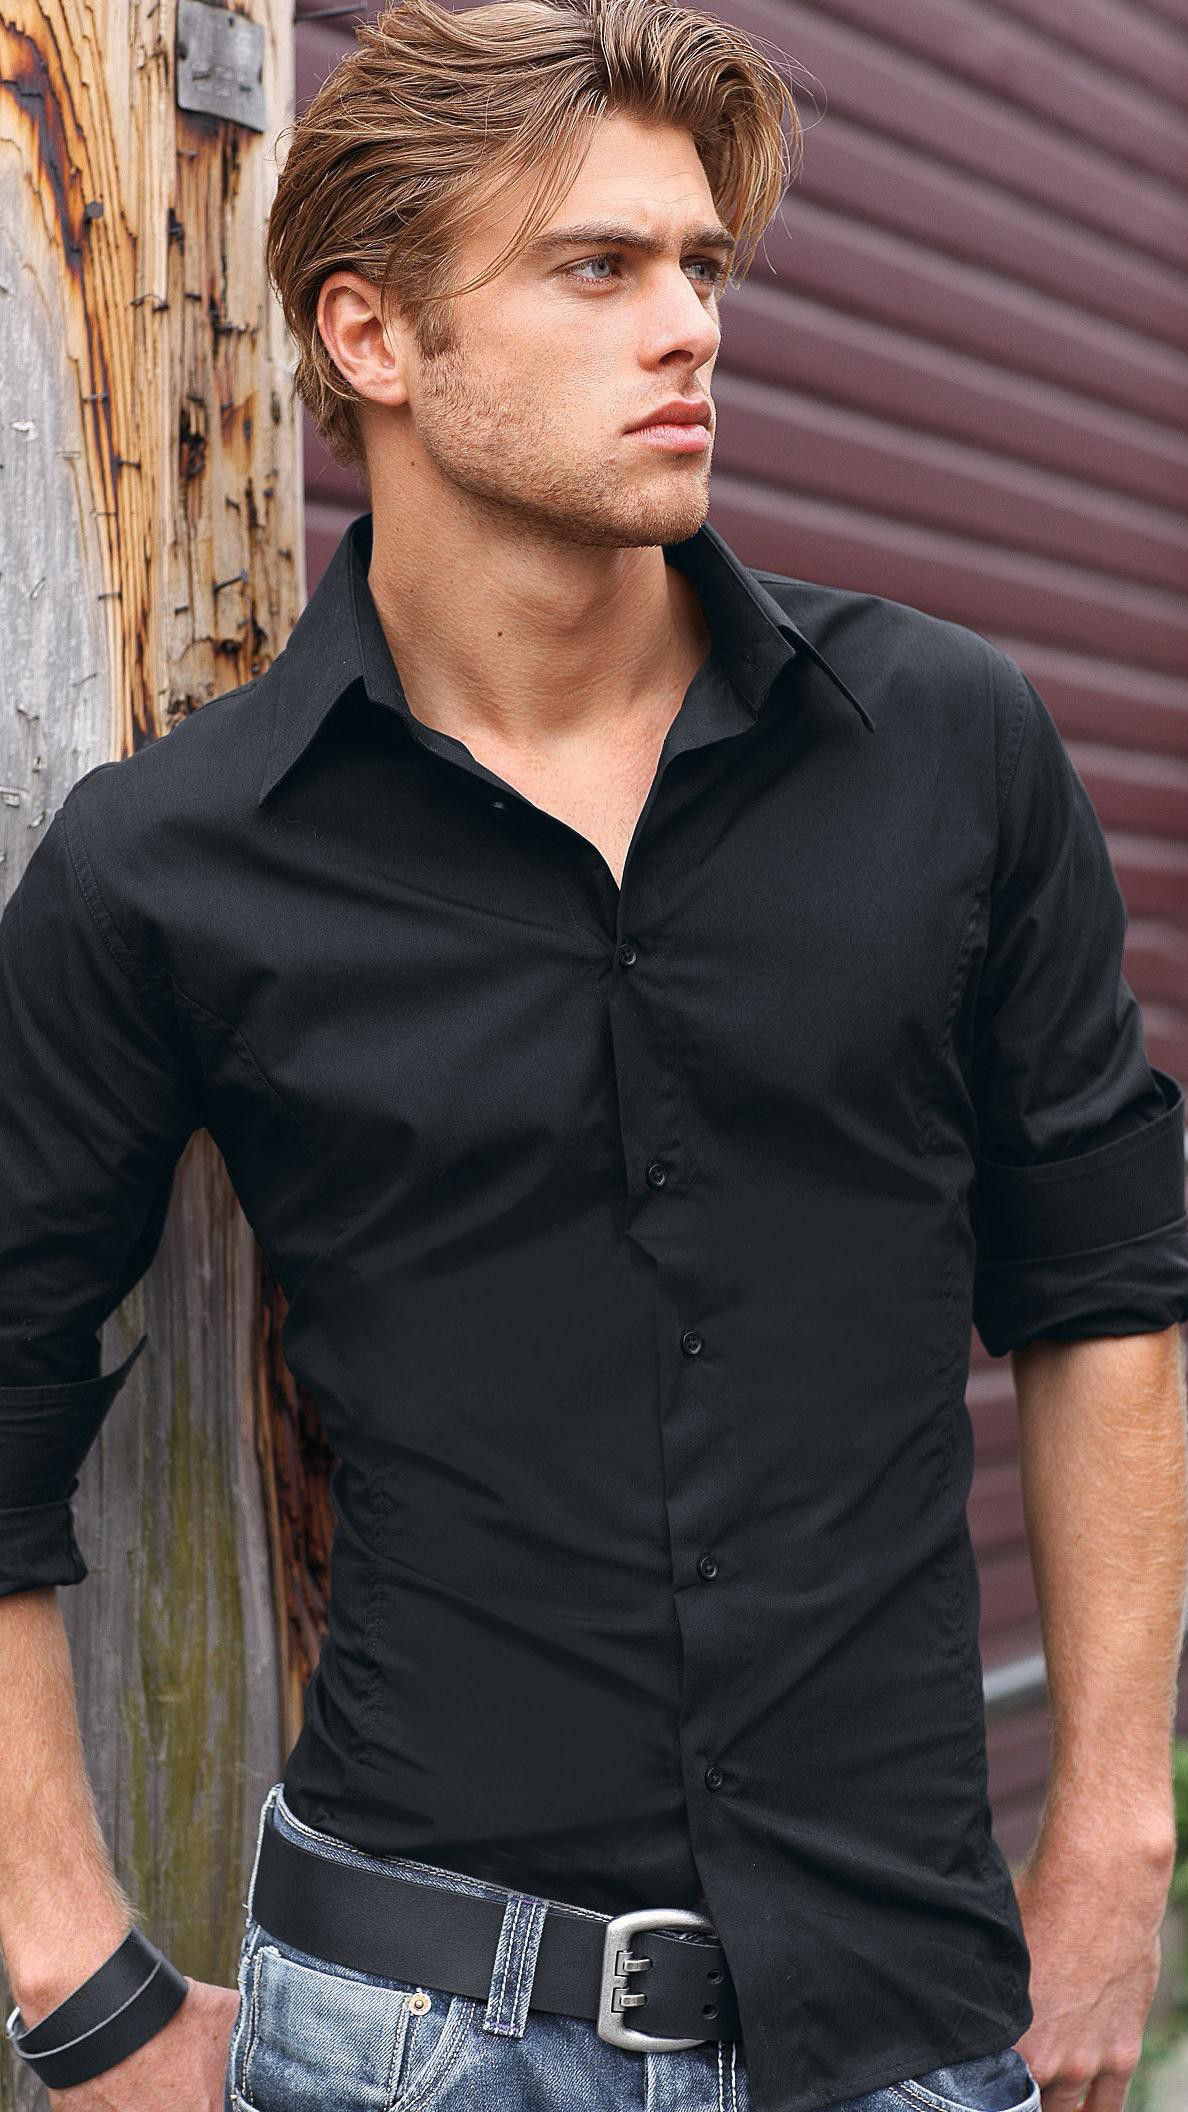 Образ с черной рубашкой для мужчины